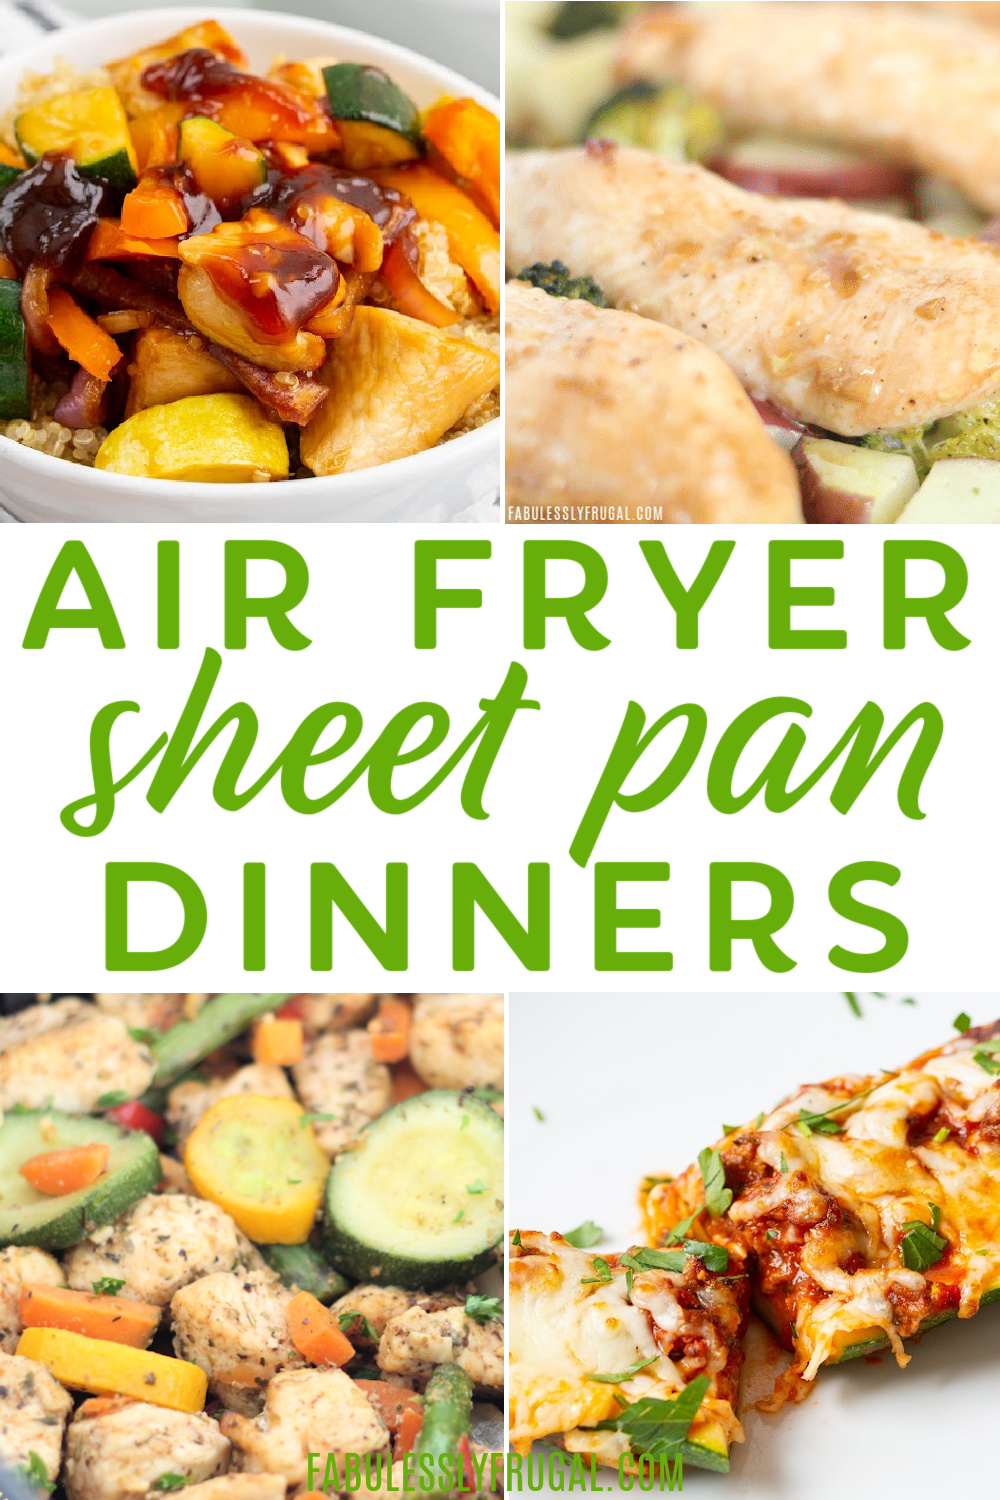 air fryer sheet pan dinners